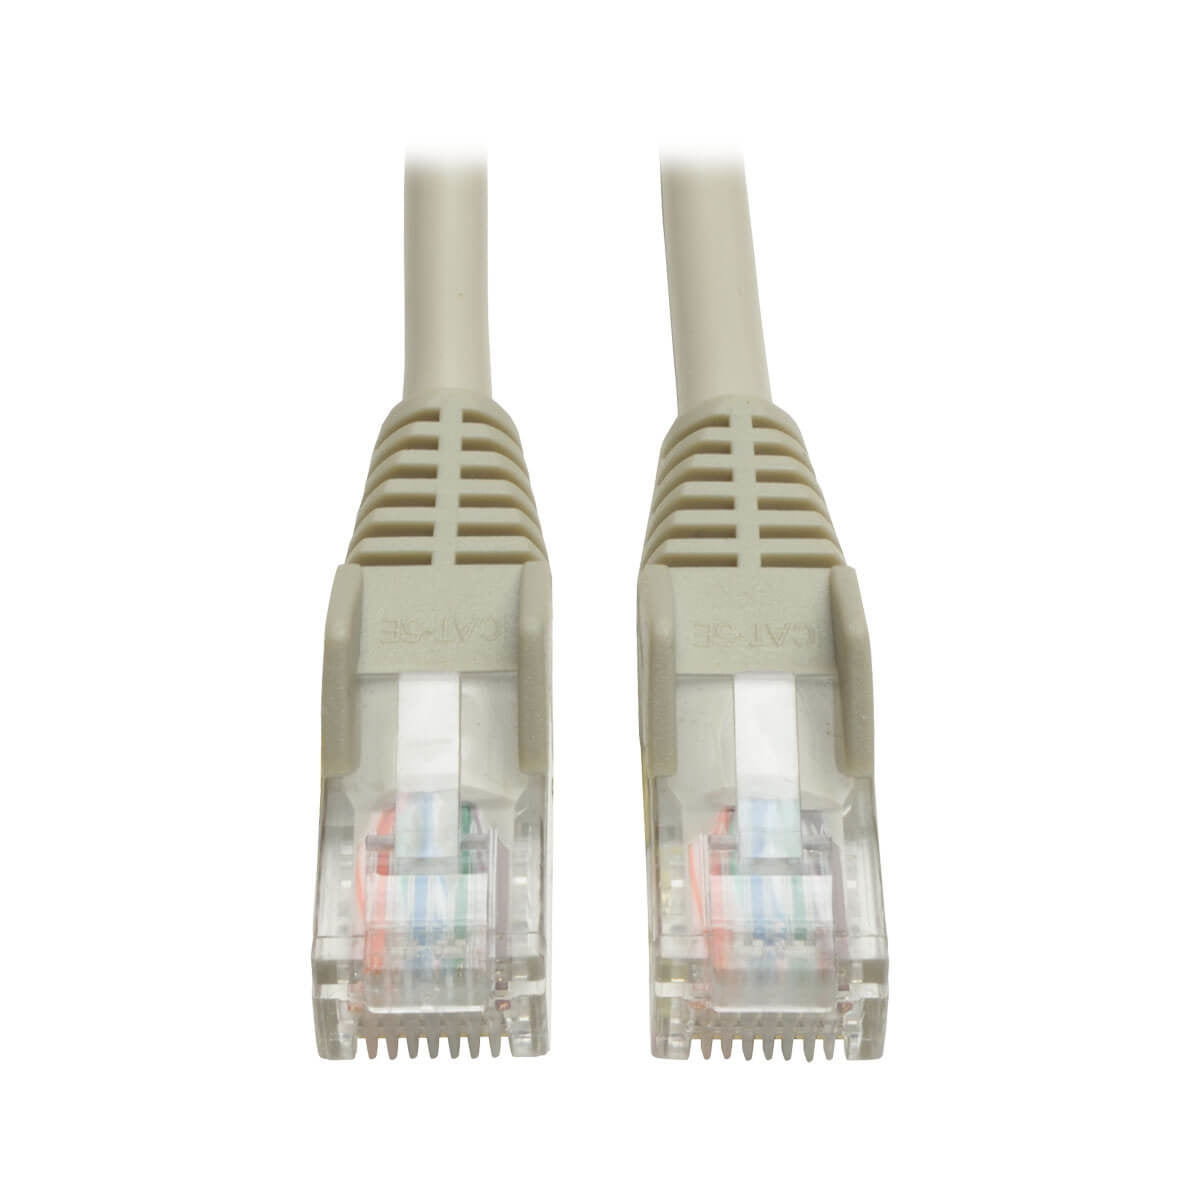 Cable  Ethernet Tripp Lite  N001-006-Gycable Tripp Lite Ethernet (Utp) Moldeado Snagless Cat5E 350 Mhz (Rj45 M/M) - Gris, 1.83 M [6 Pies] Hasta 15 Años De Garantia.